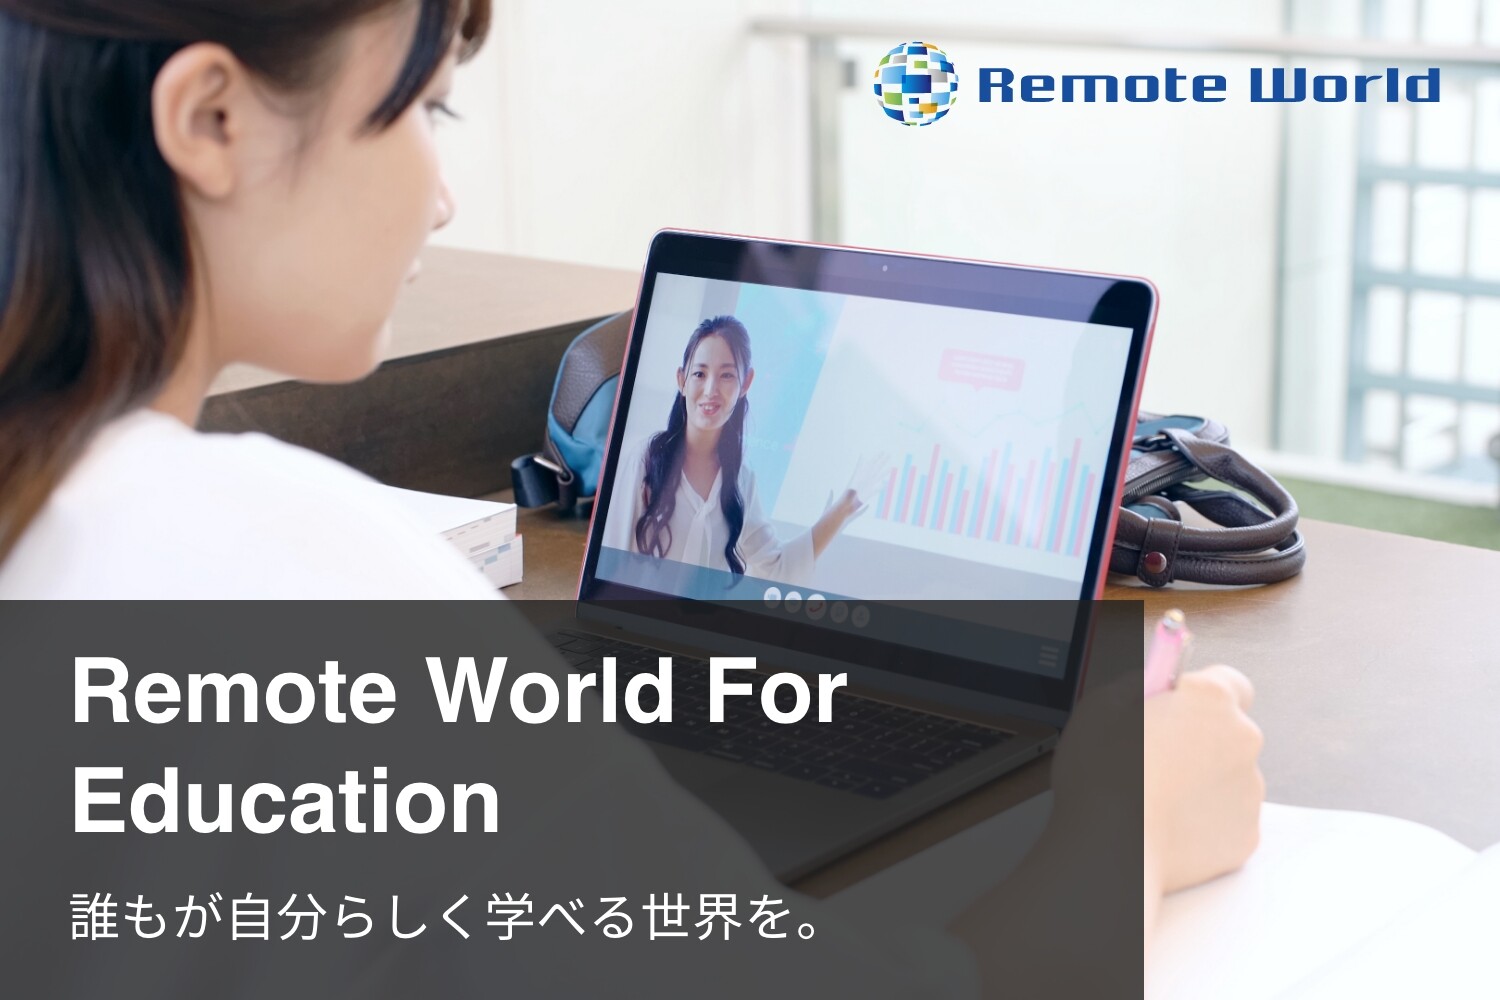 Remote World For Education 誰もが自分らしく学べる世界を。